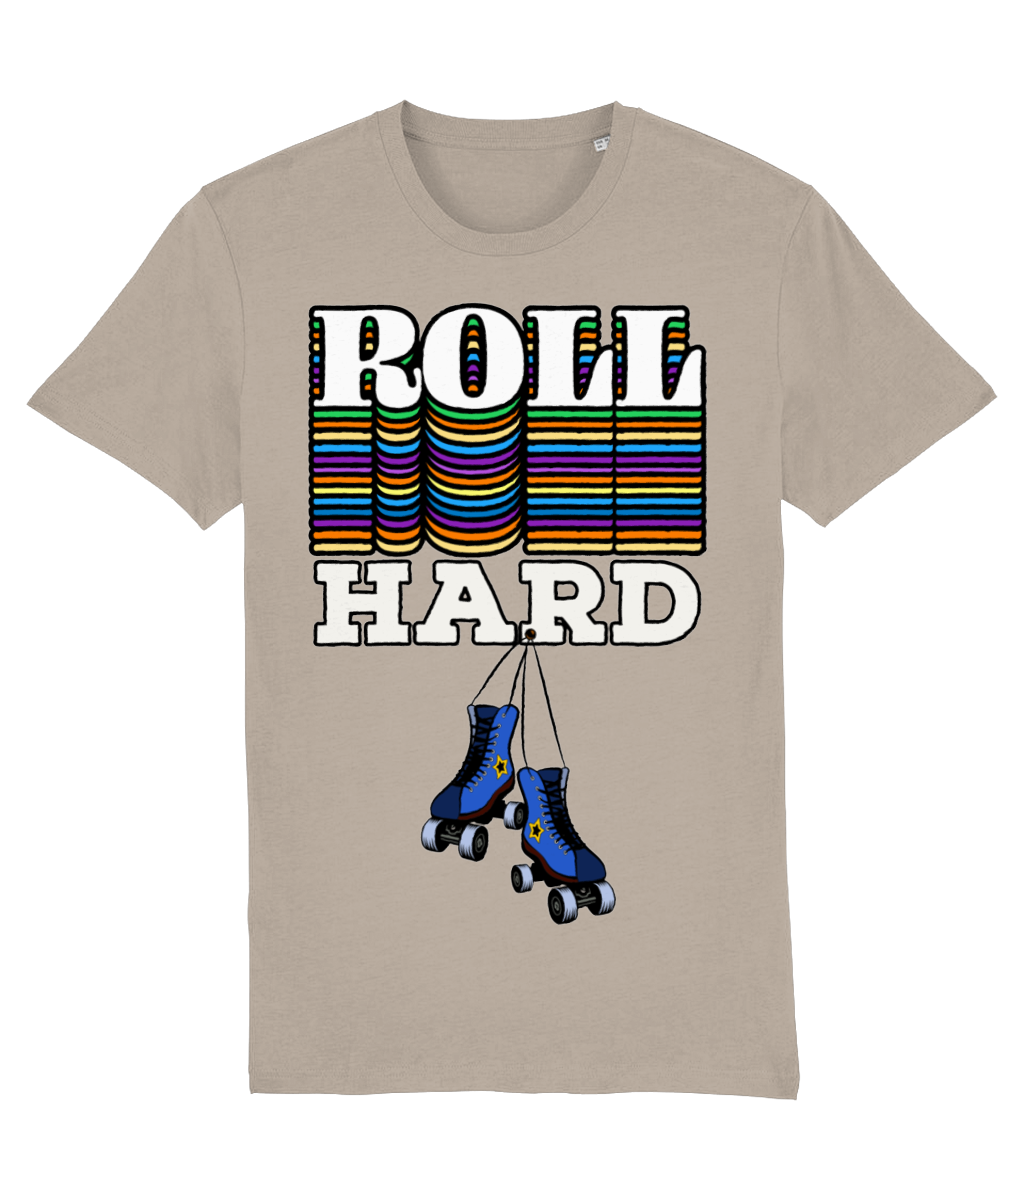 Tshirt Roll Hard-WhiteBlue